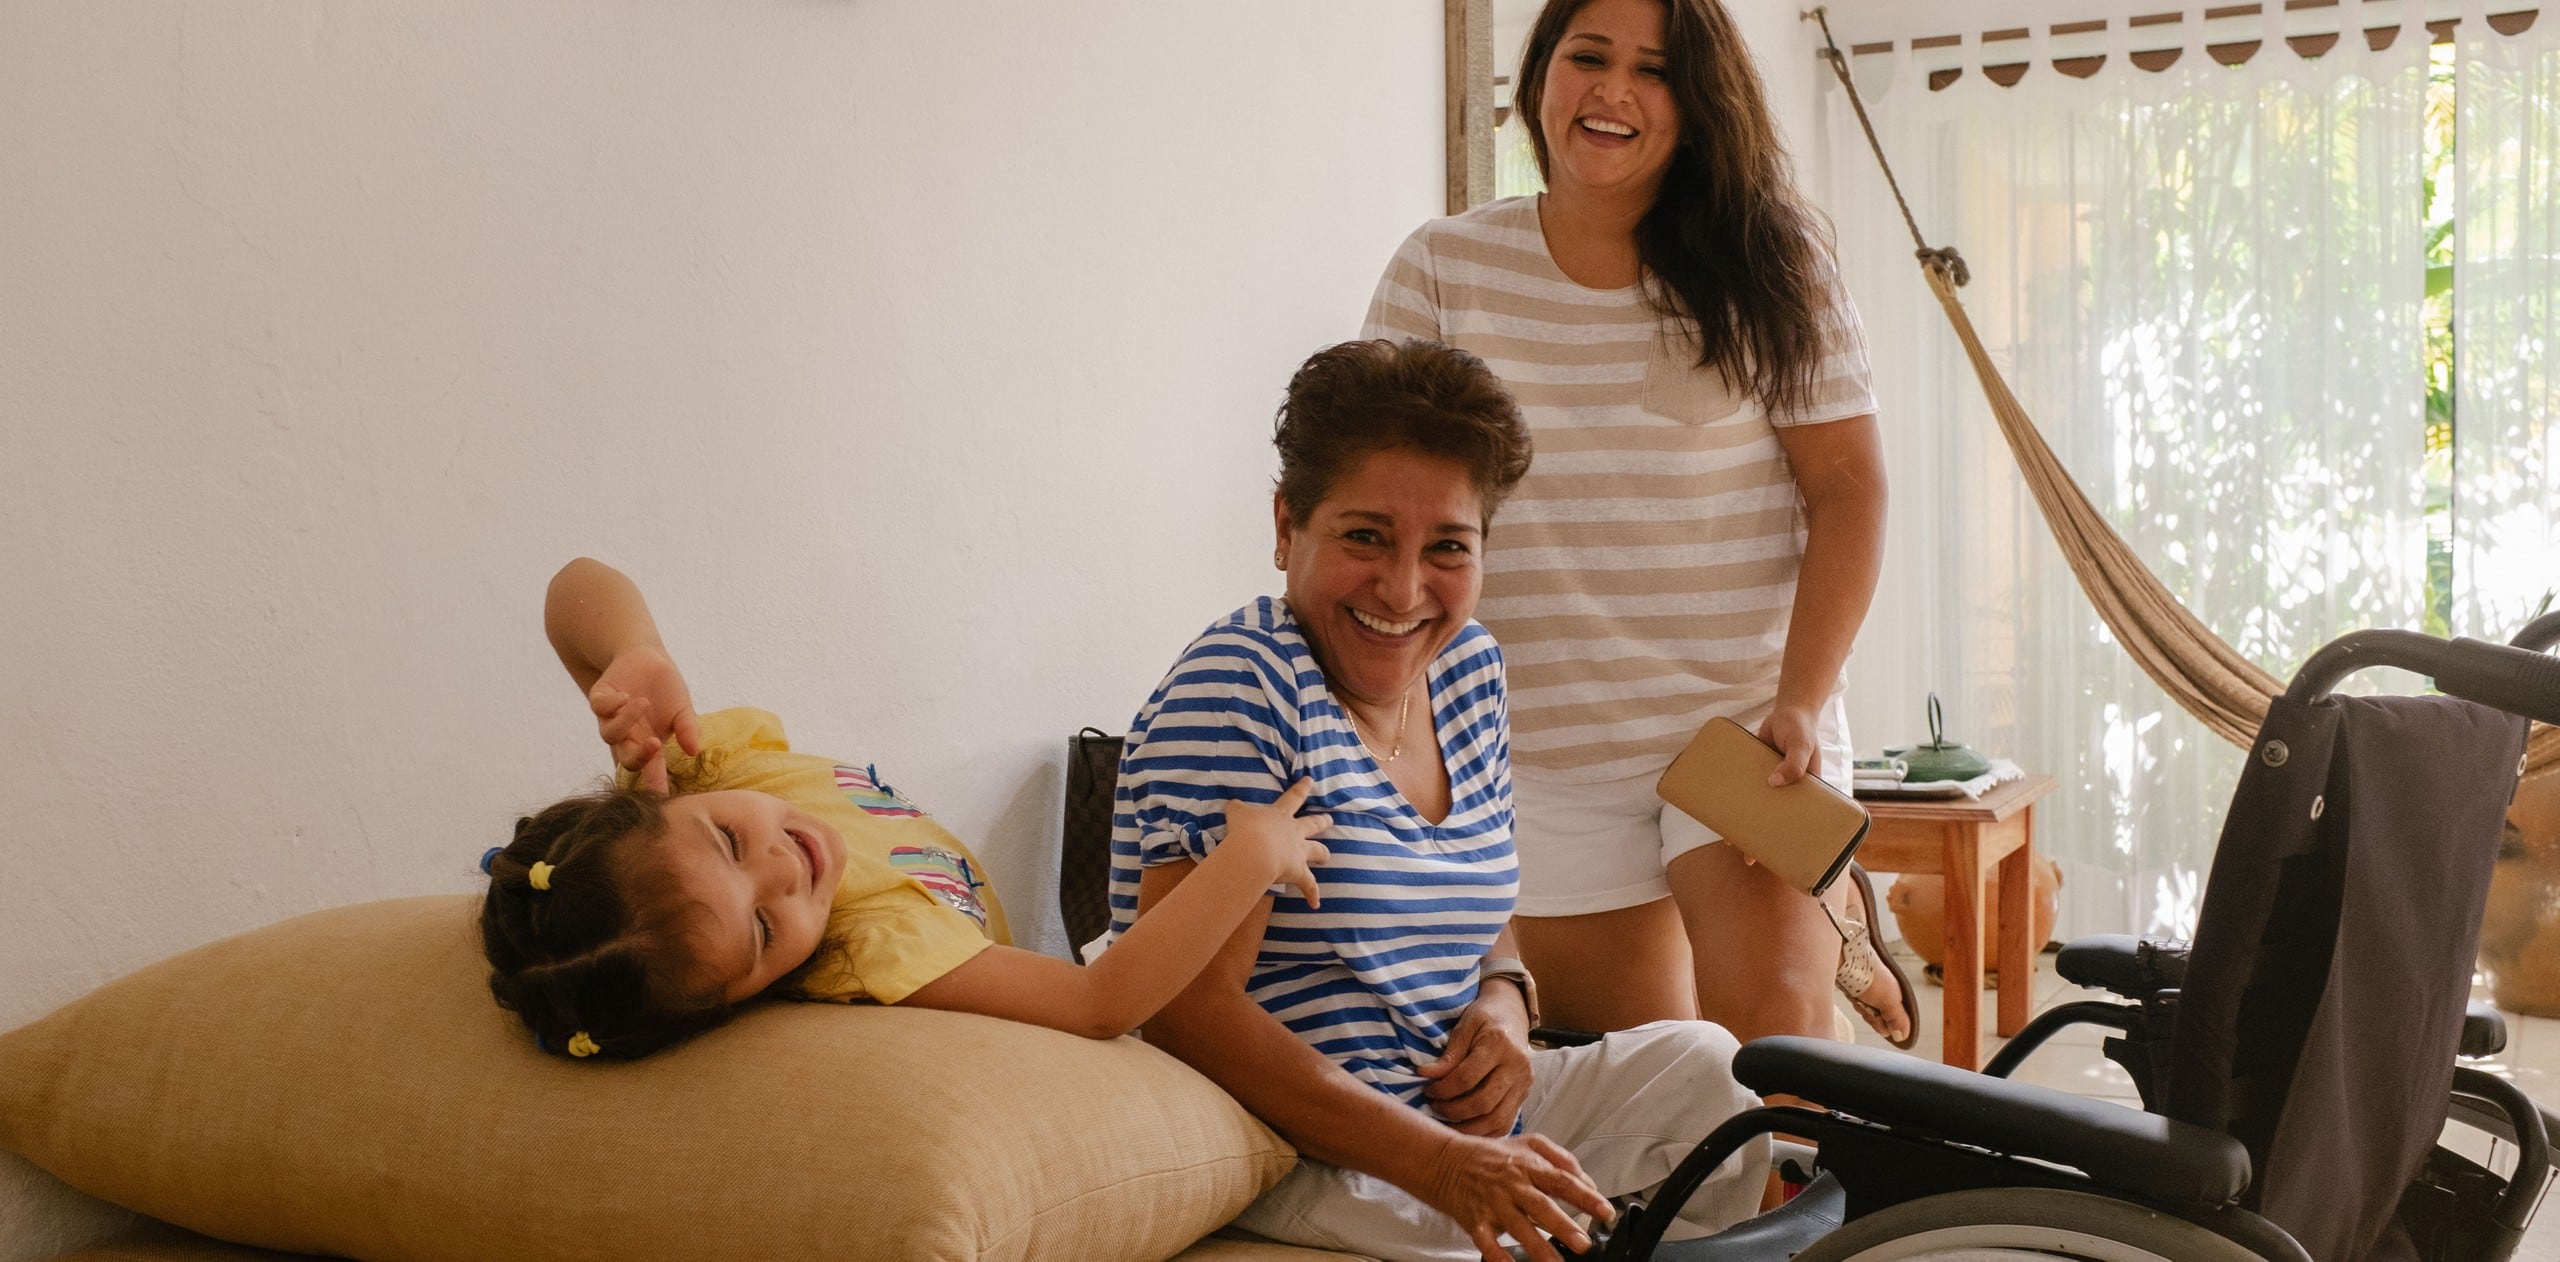 Семья из трех поколений в помещении с элементами доступной среды, они общаются и улыбаются. Перед самым старшим членом семьи стоит кресло-коляска.